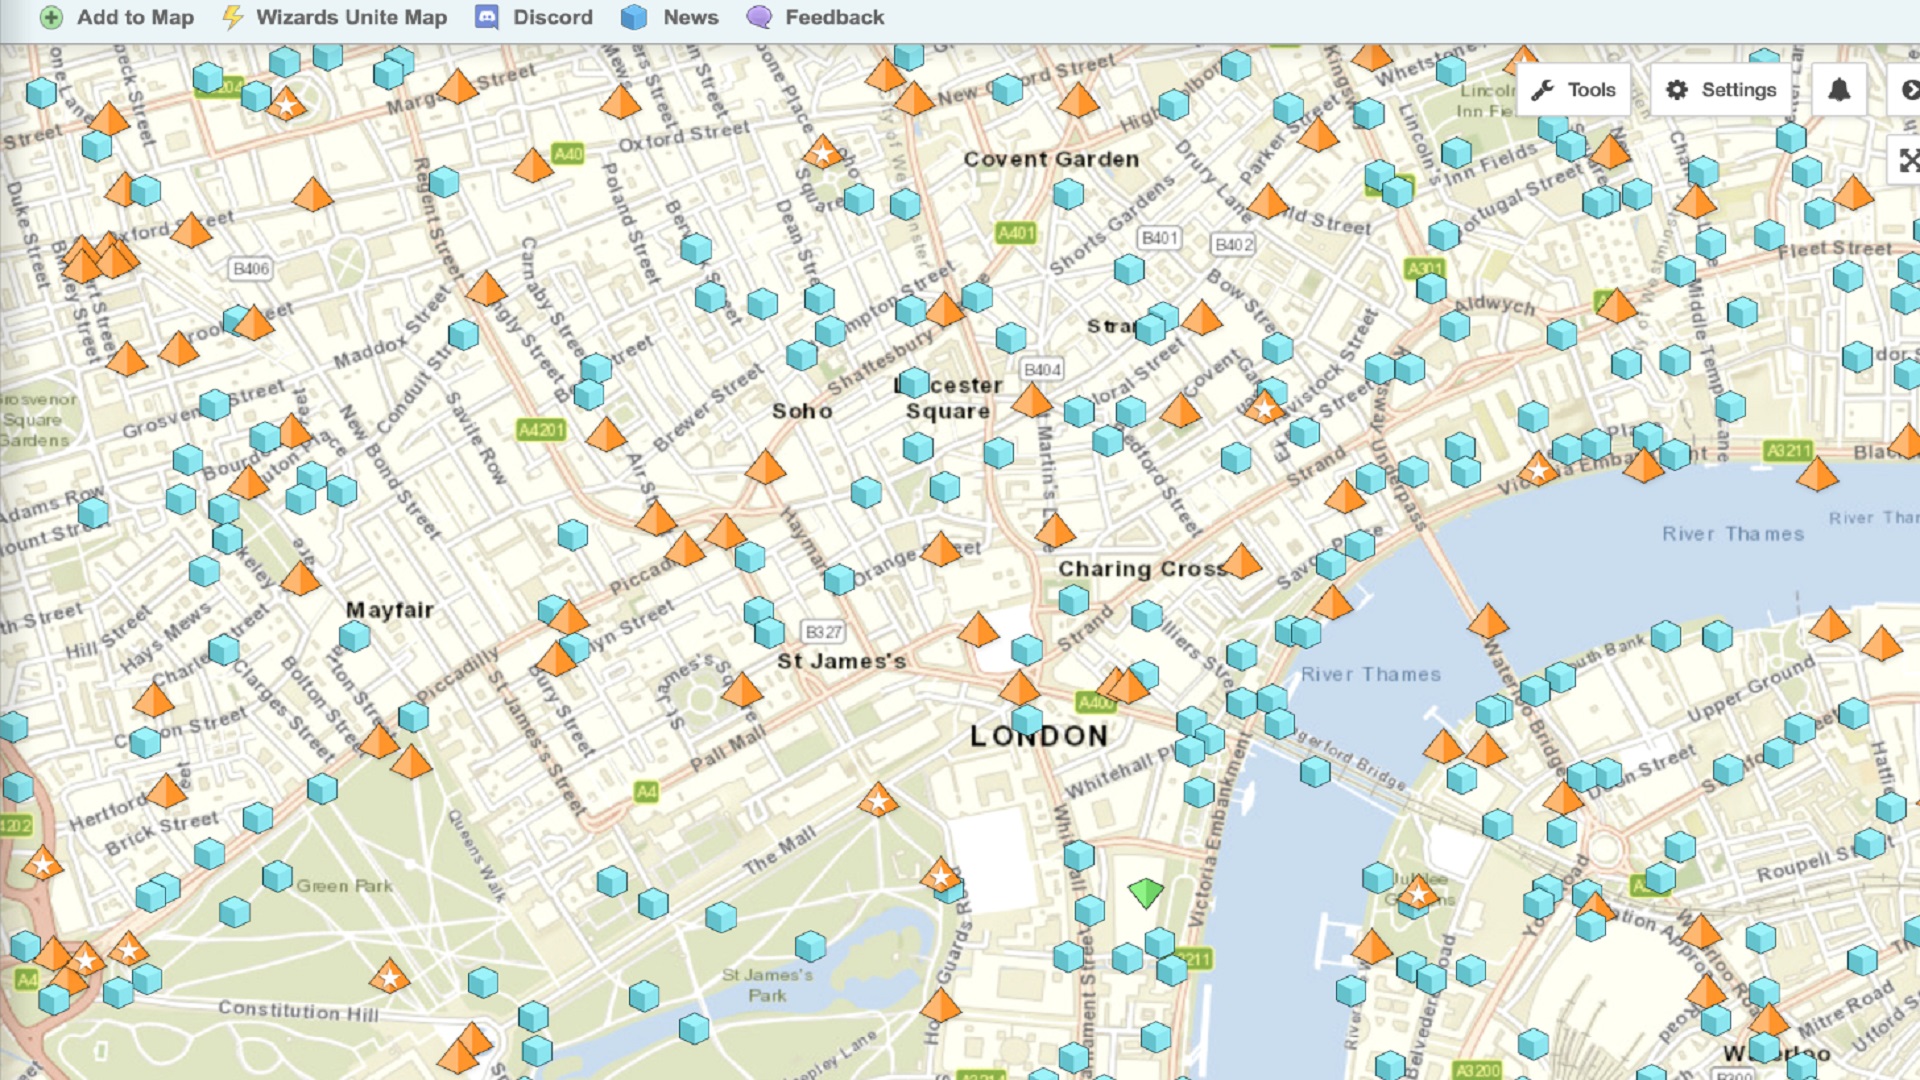 Pokémon Go Maps - Um mapa de rua de Londres mostrando locais de Pokémon Go Stops and Gyms